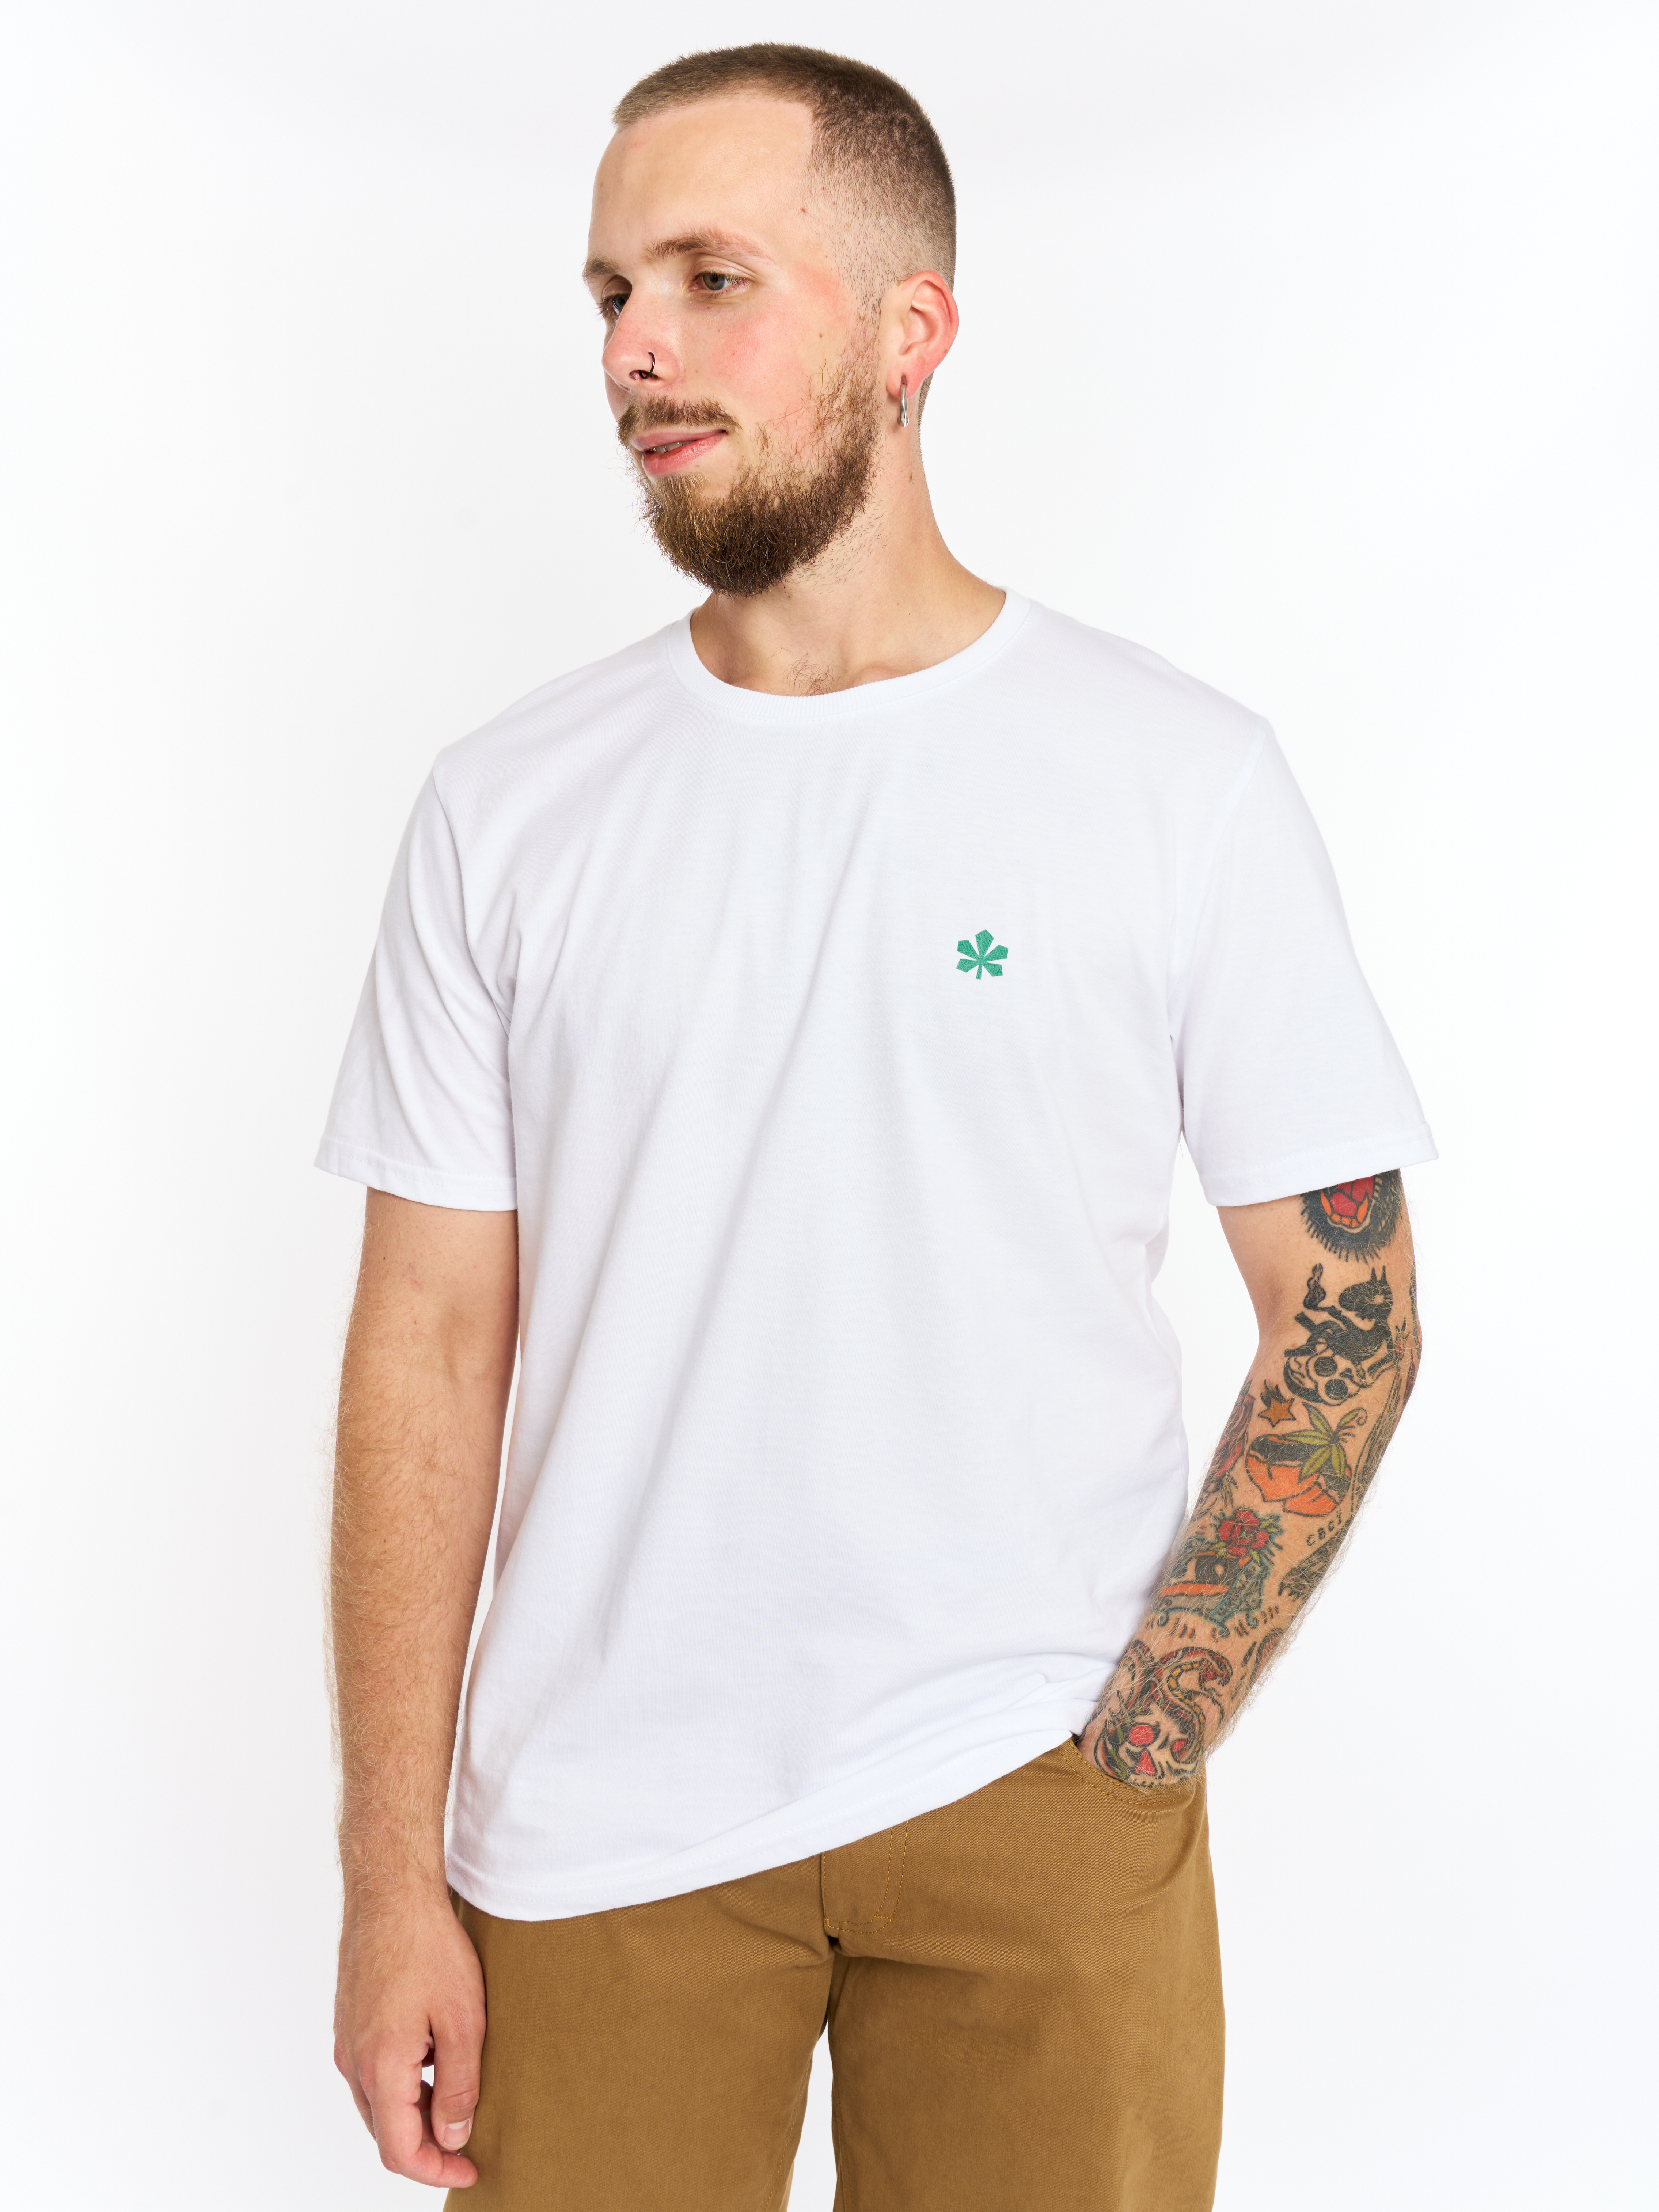 Картинка Біла футболка з зеленим каштаном